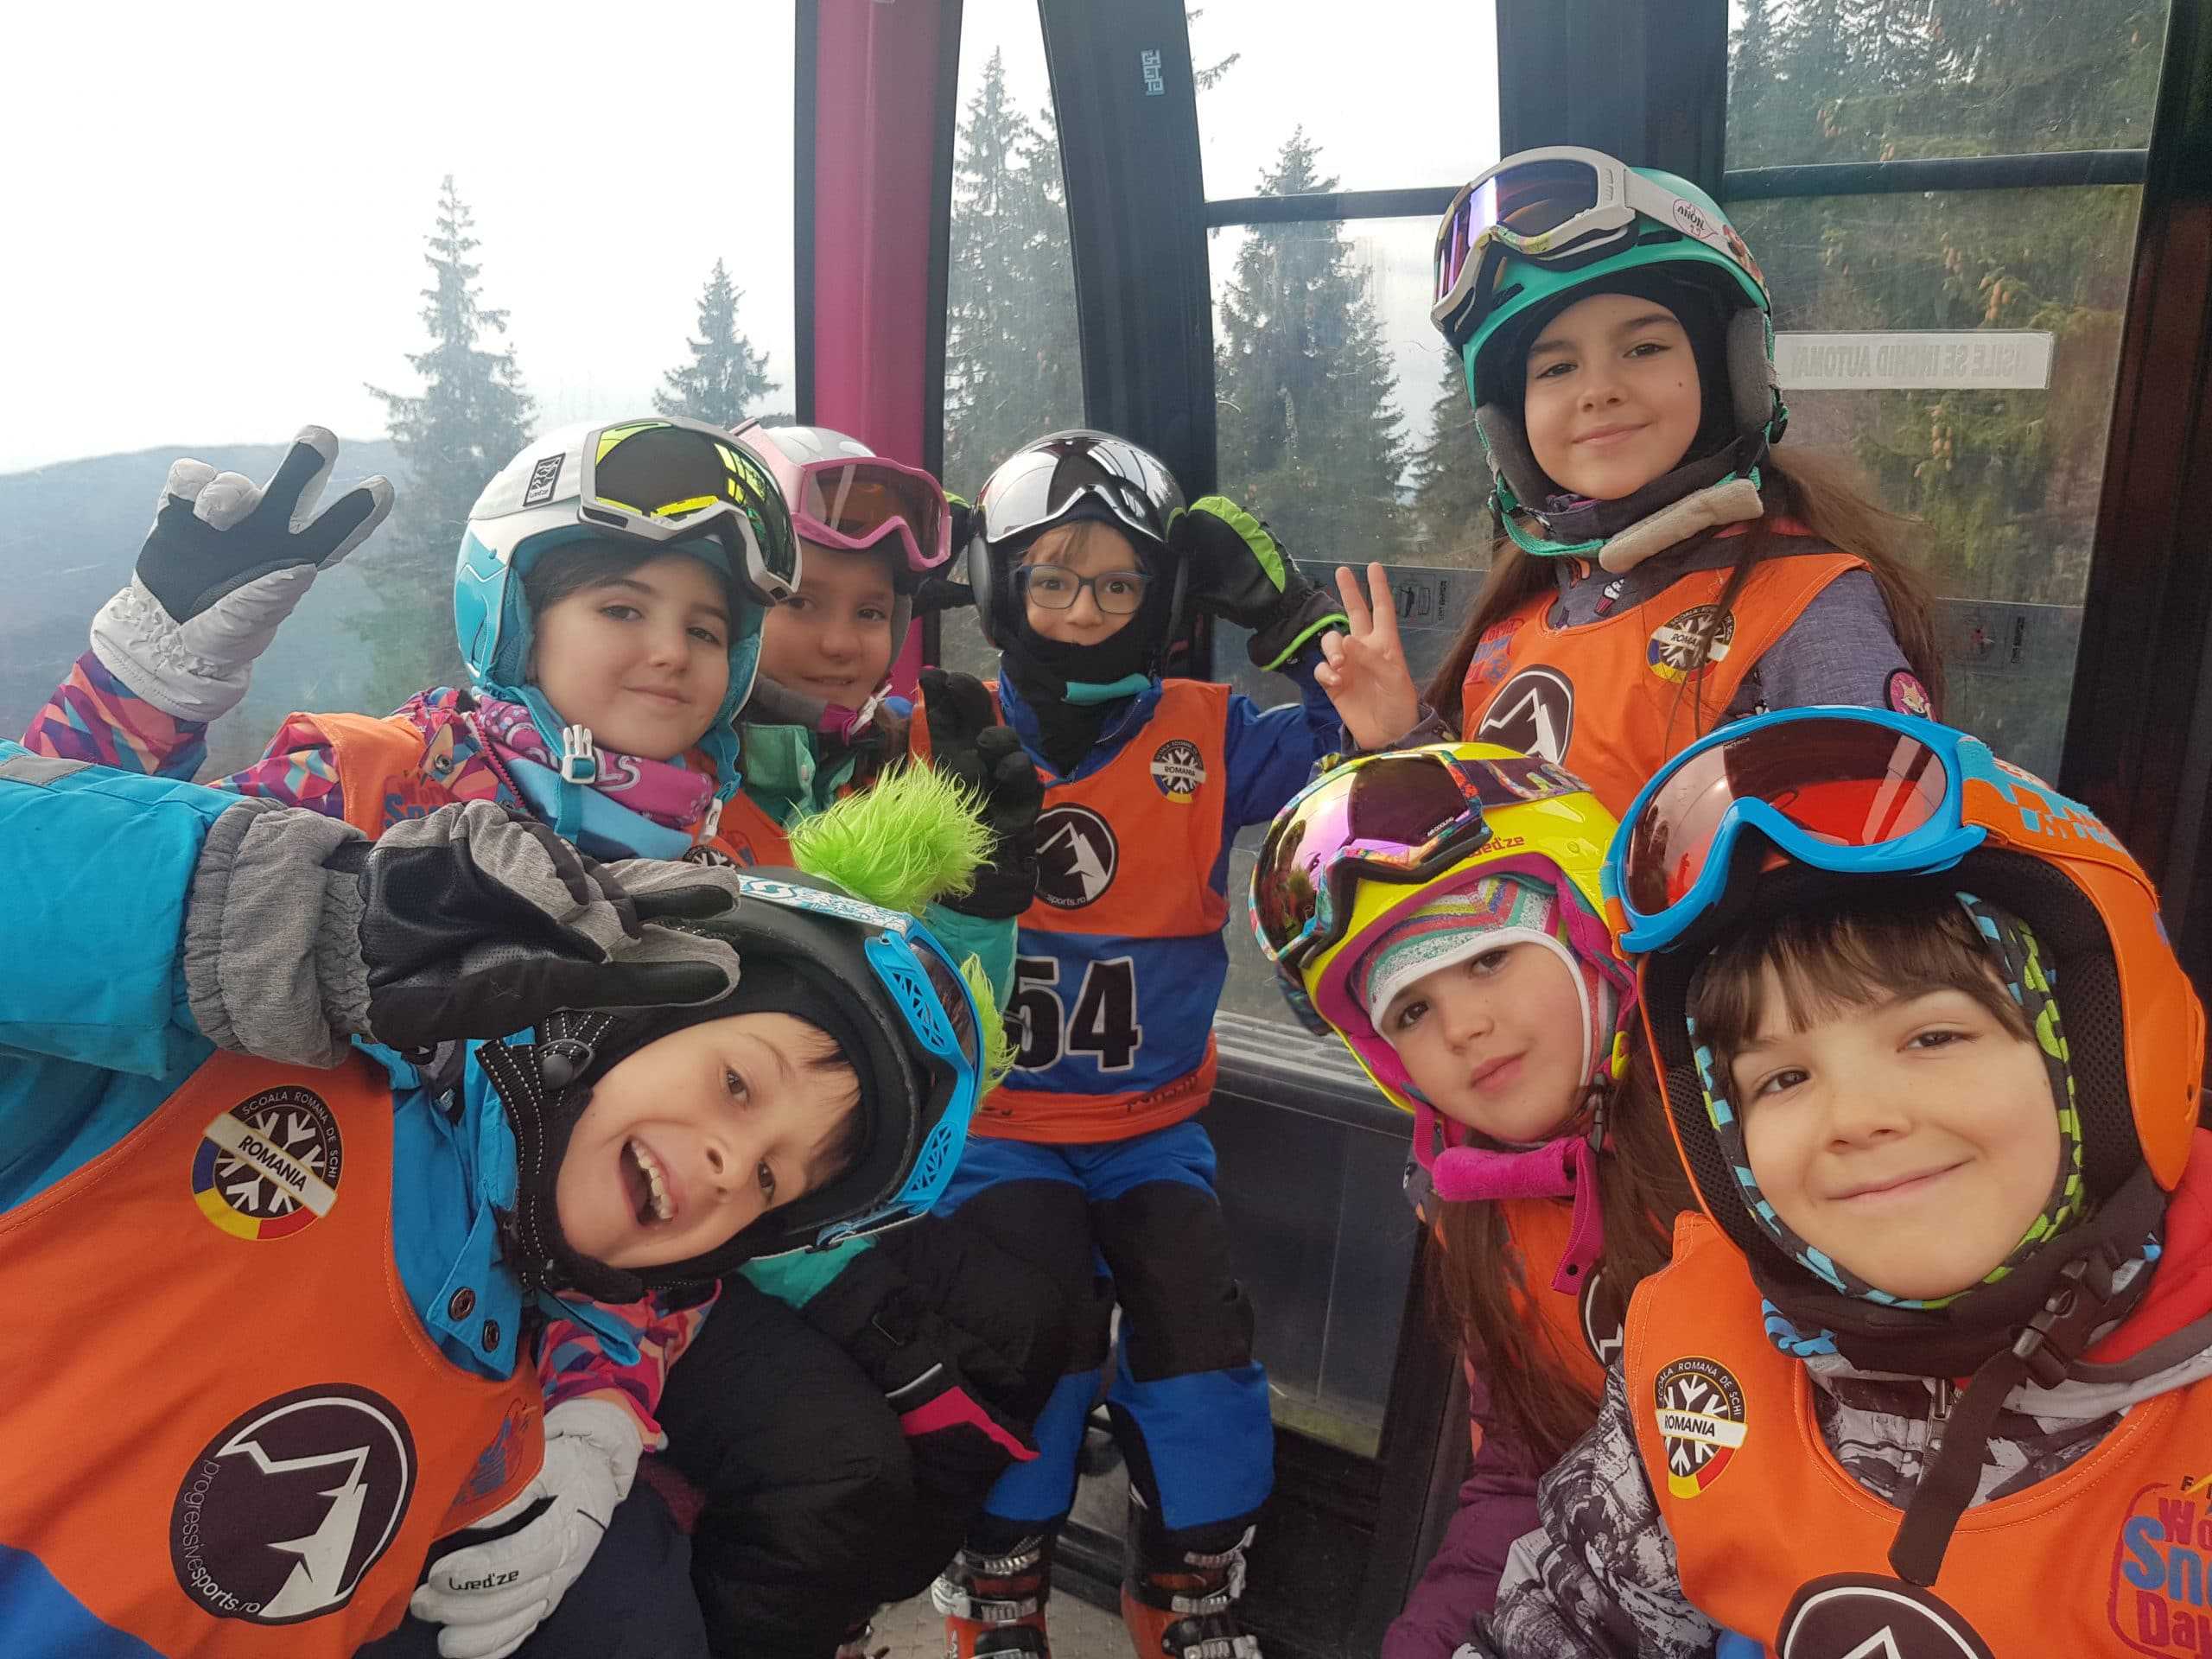 Only good vibes - ski copii gondola